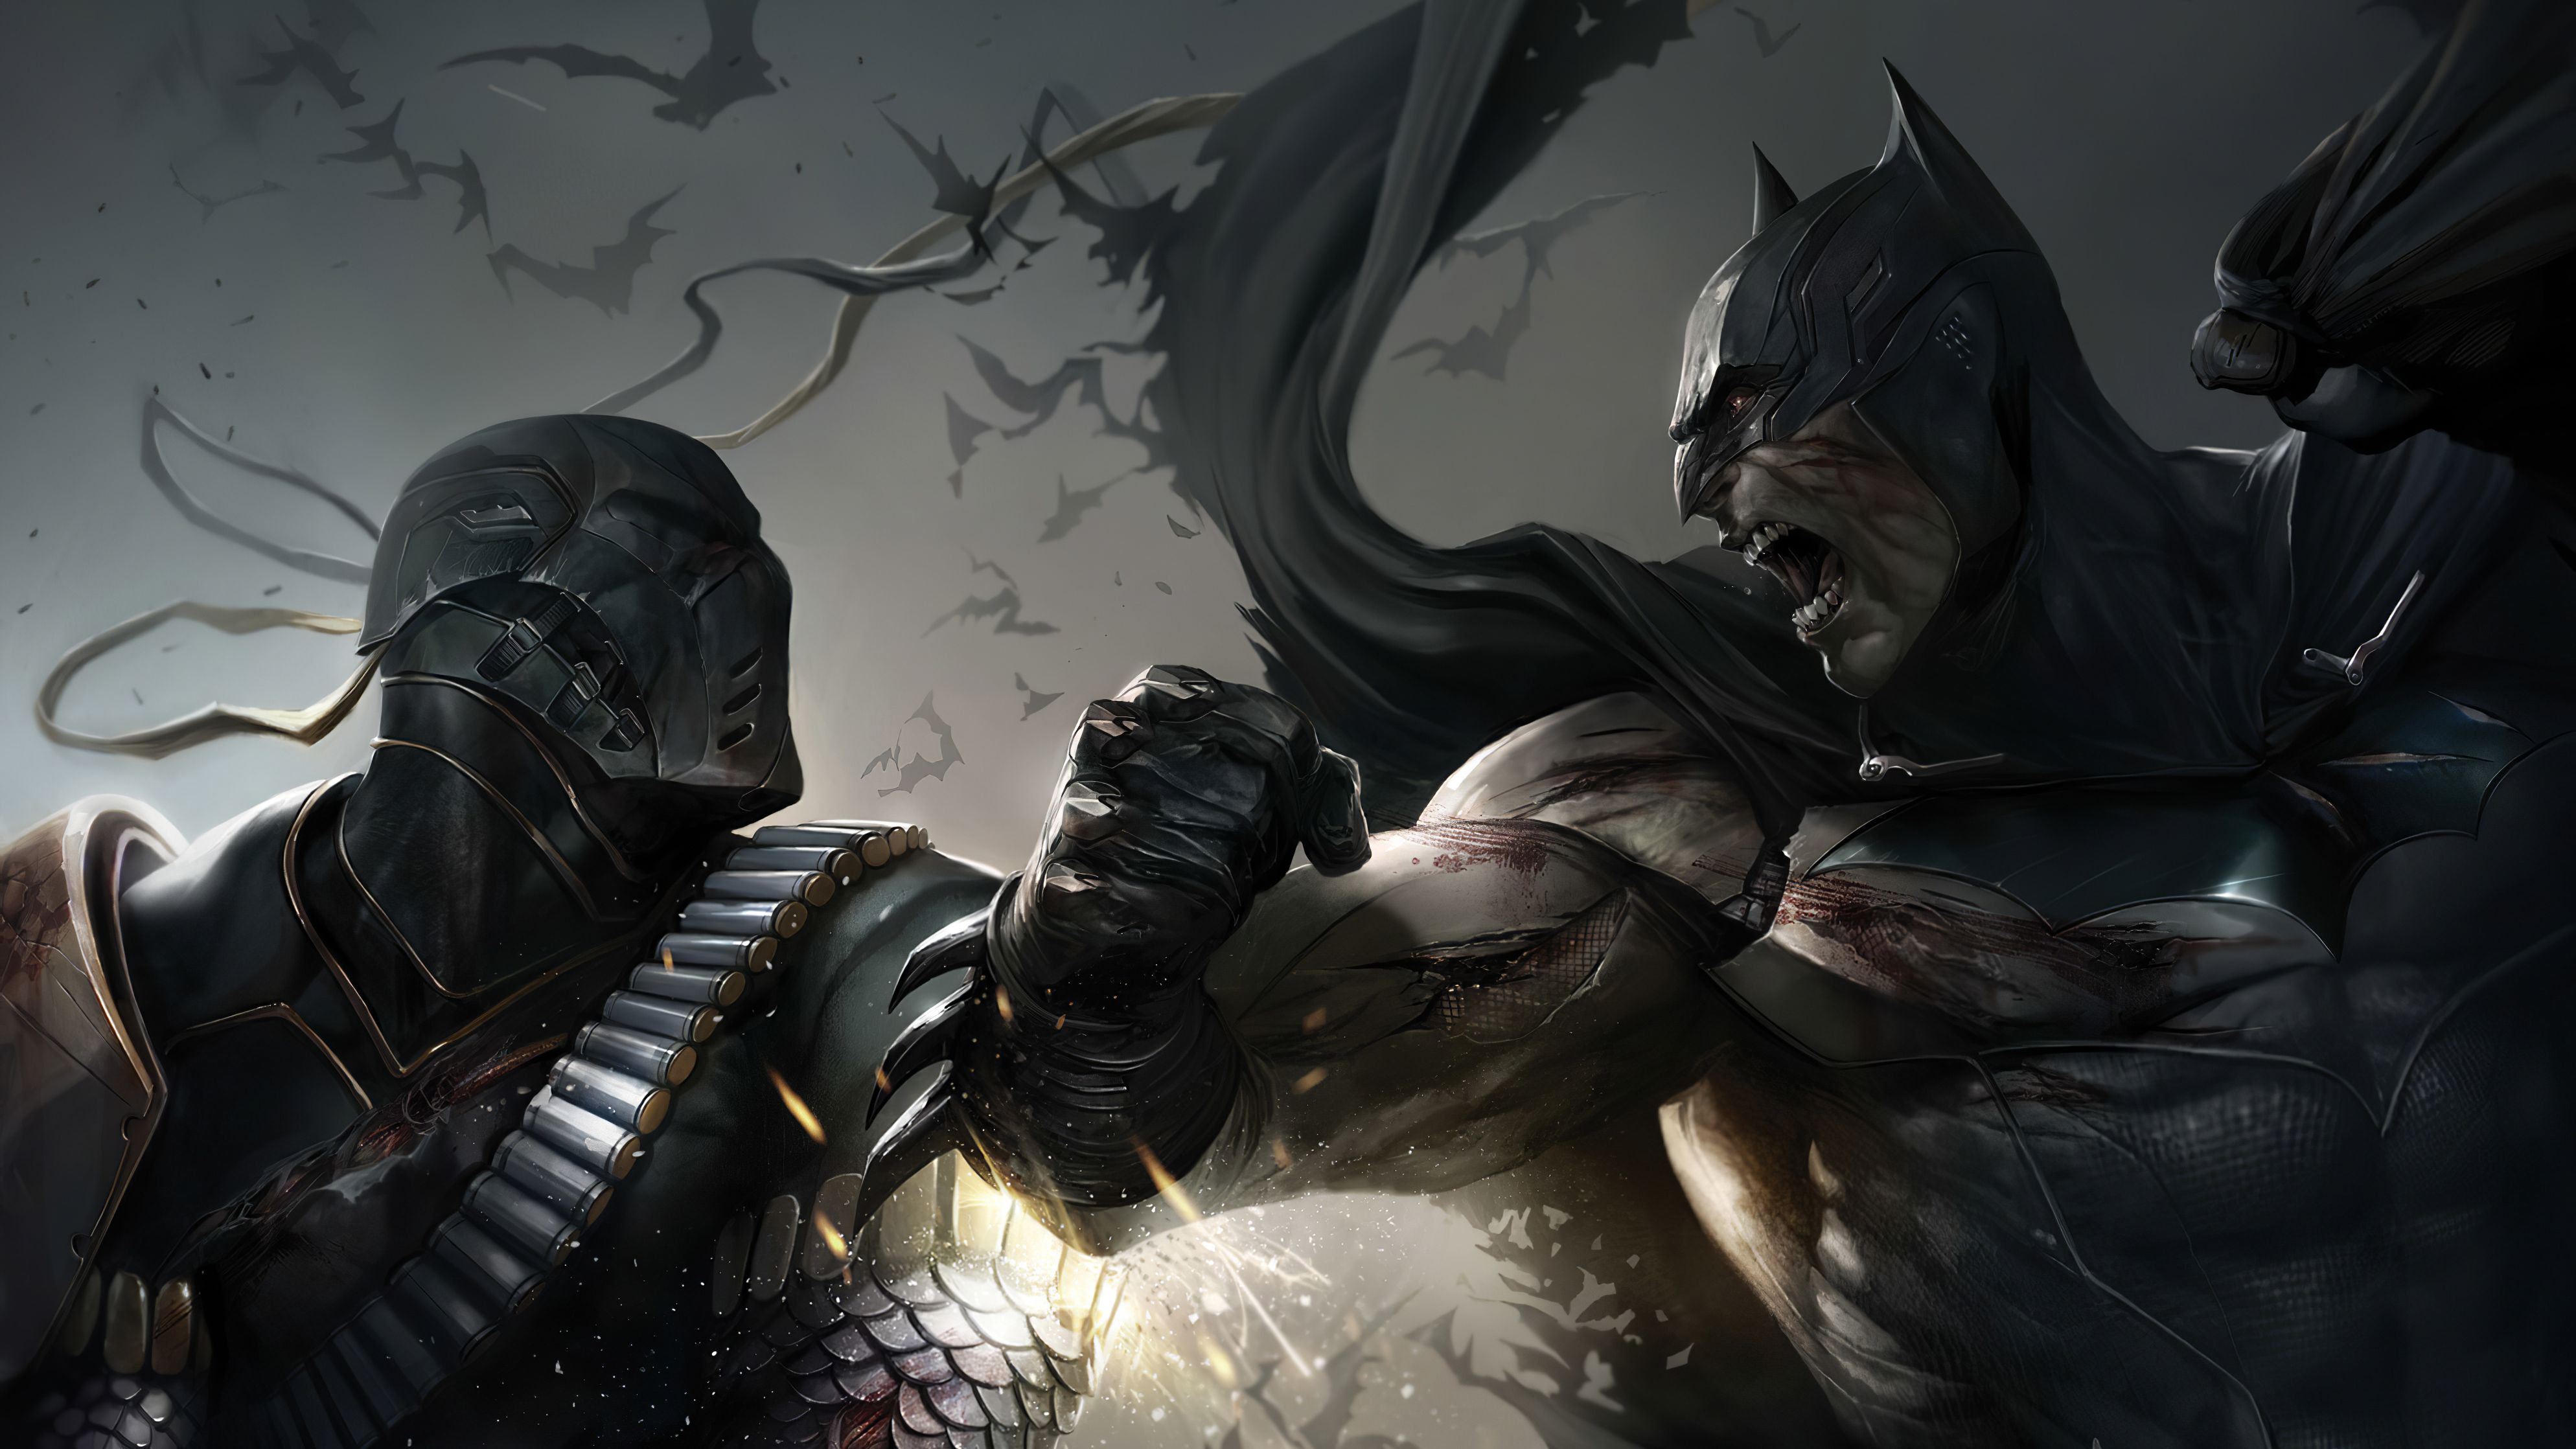 Batman fighting Deathstroke 4k Ultra HD Wallpaper. Background